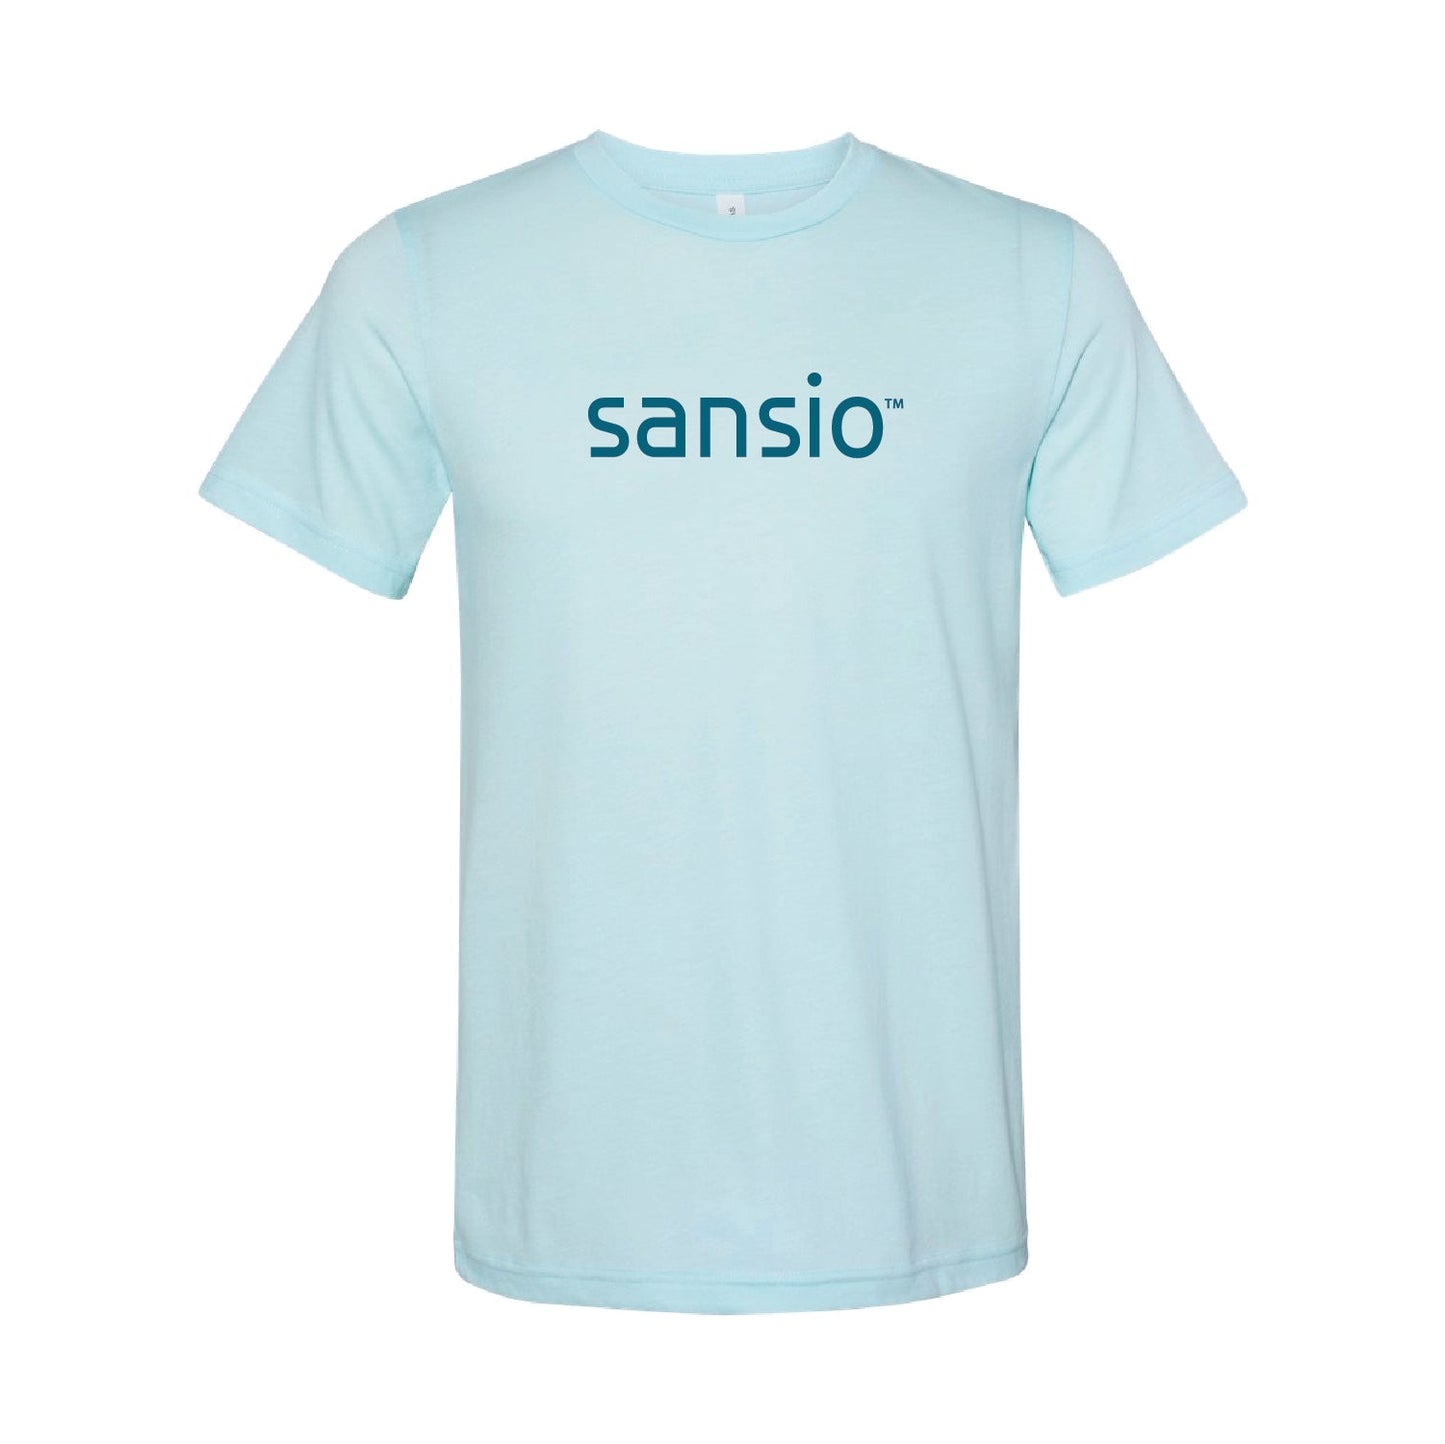 Sansio Unisex/Mens Sueded Tshirt - DSP On Demand